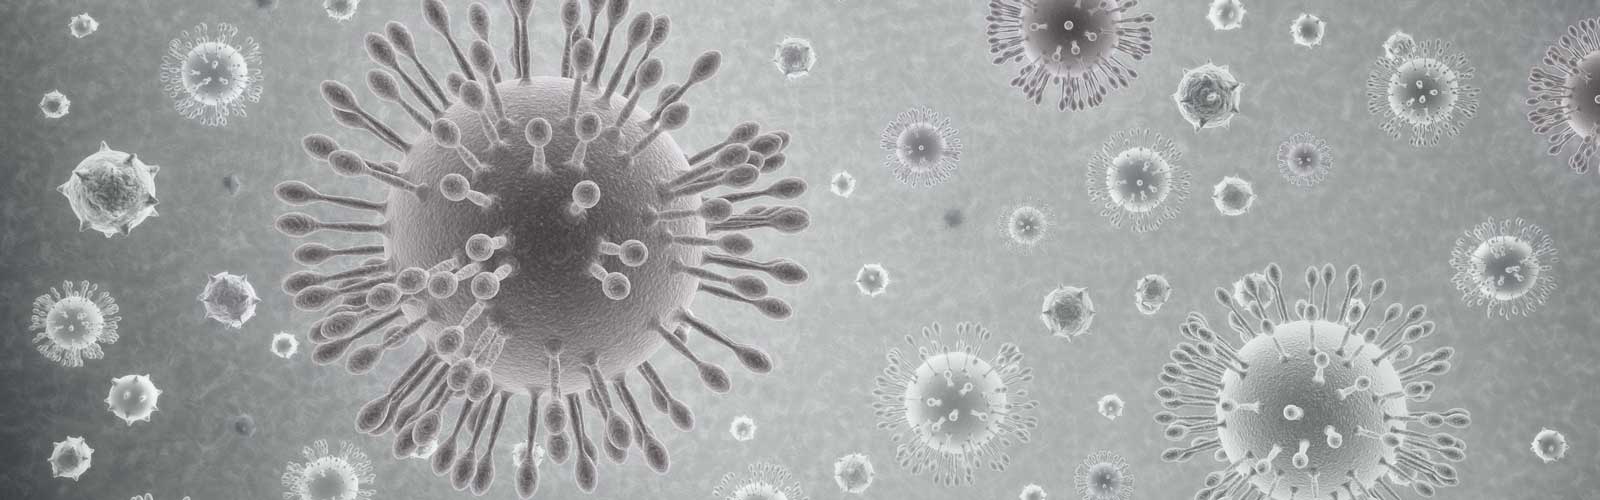 microscopic image of the Coronavirus